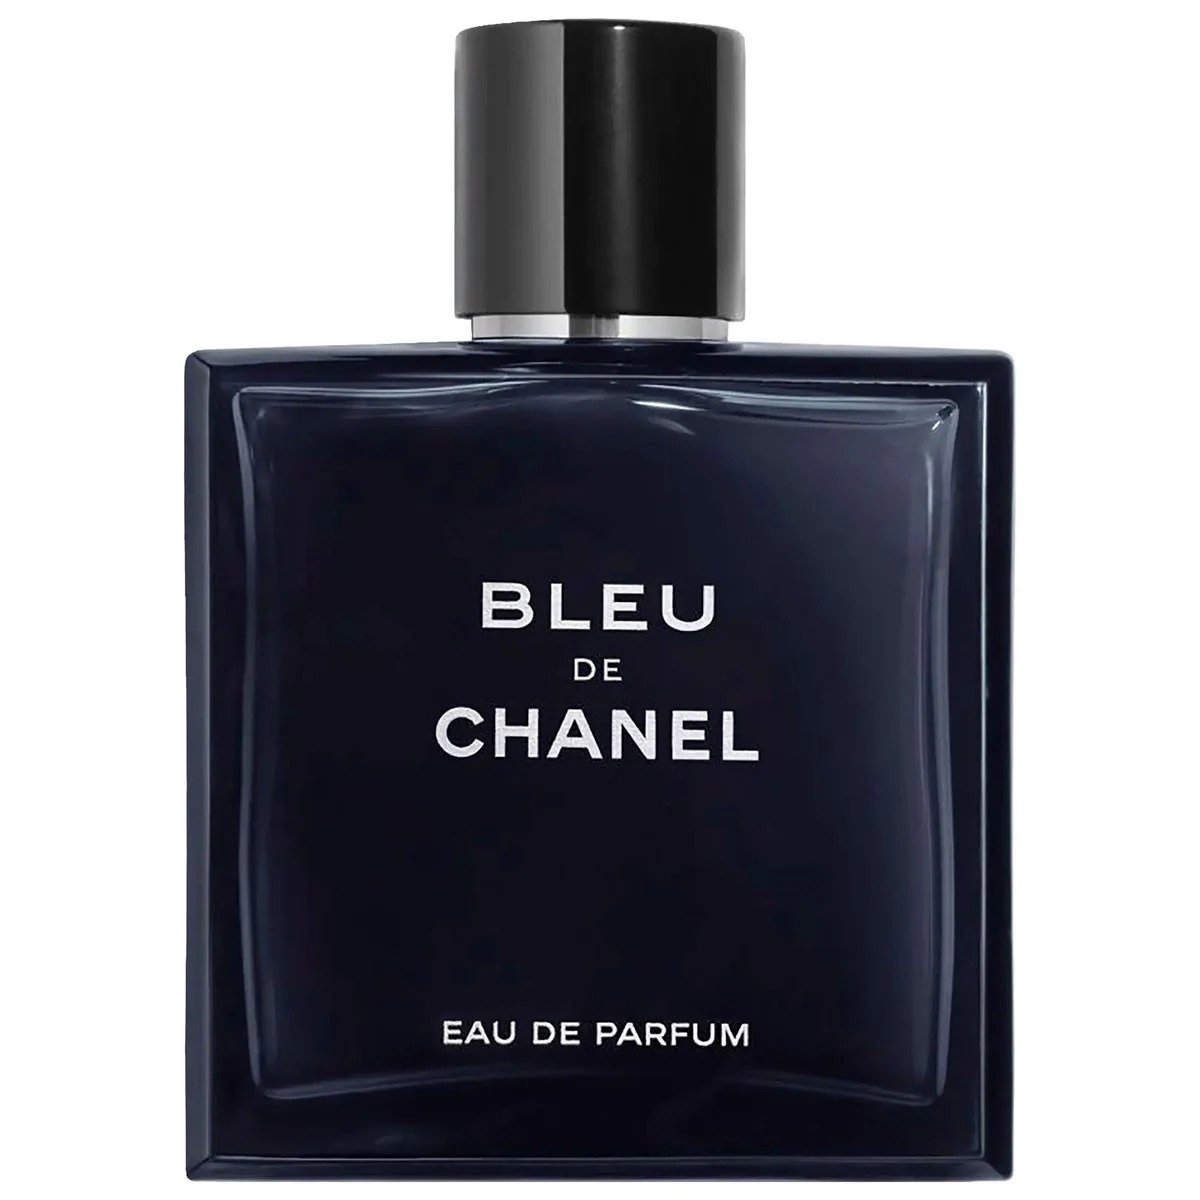 JERSEY LES EXCLUSIFS DE CHANEL  Parfum  05 FL OZ  CHANEL